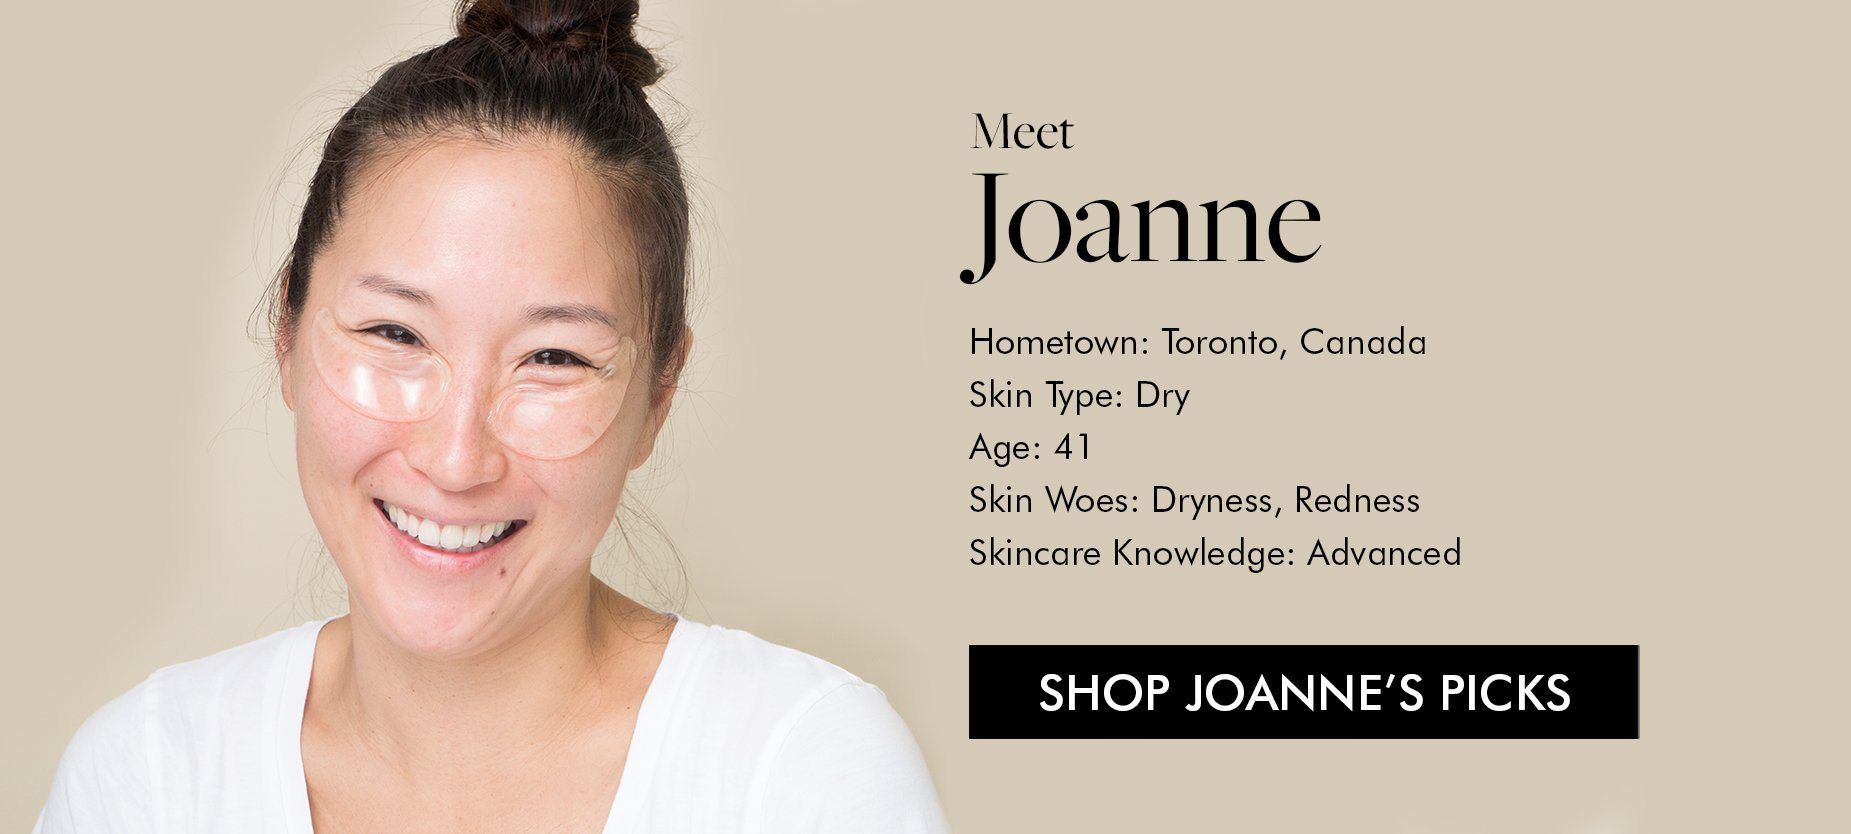 Shop Joanne's Picks